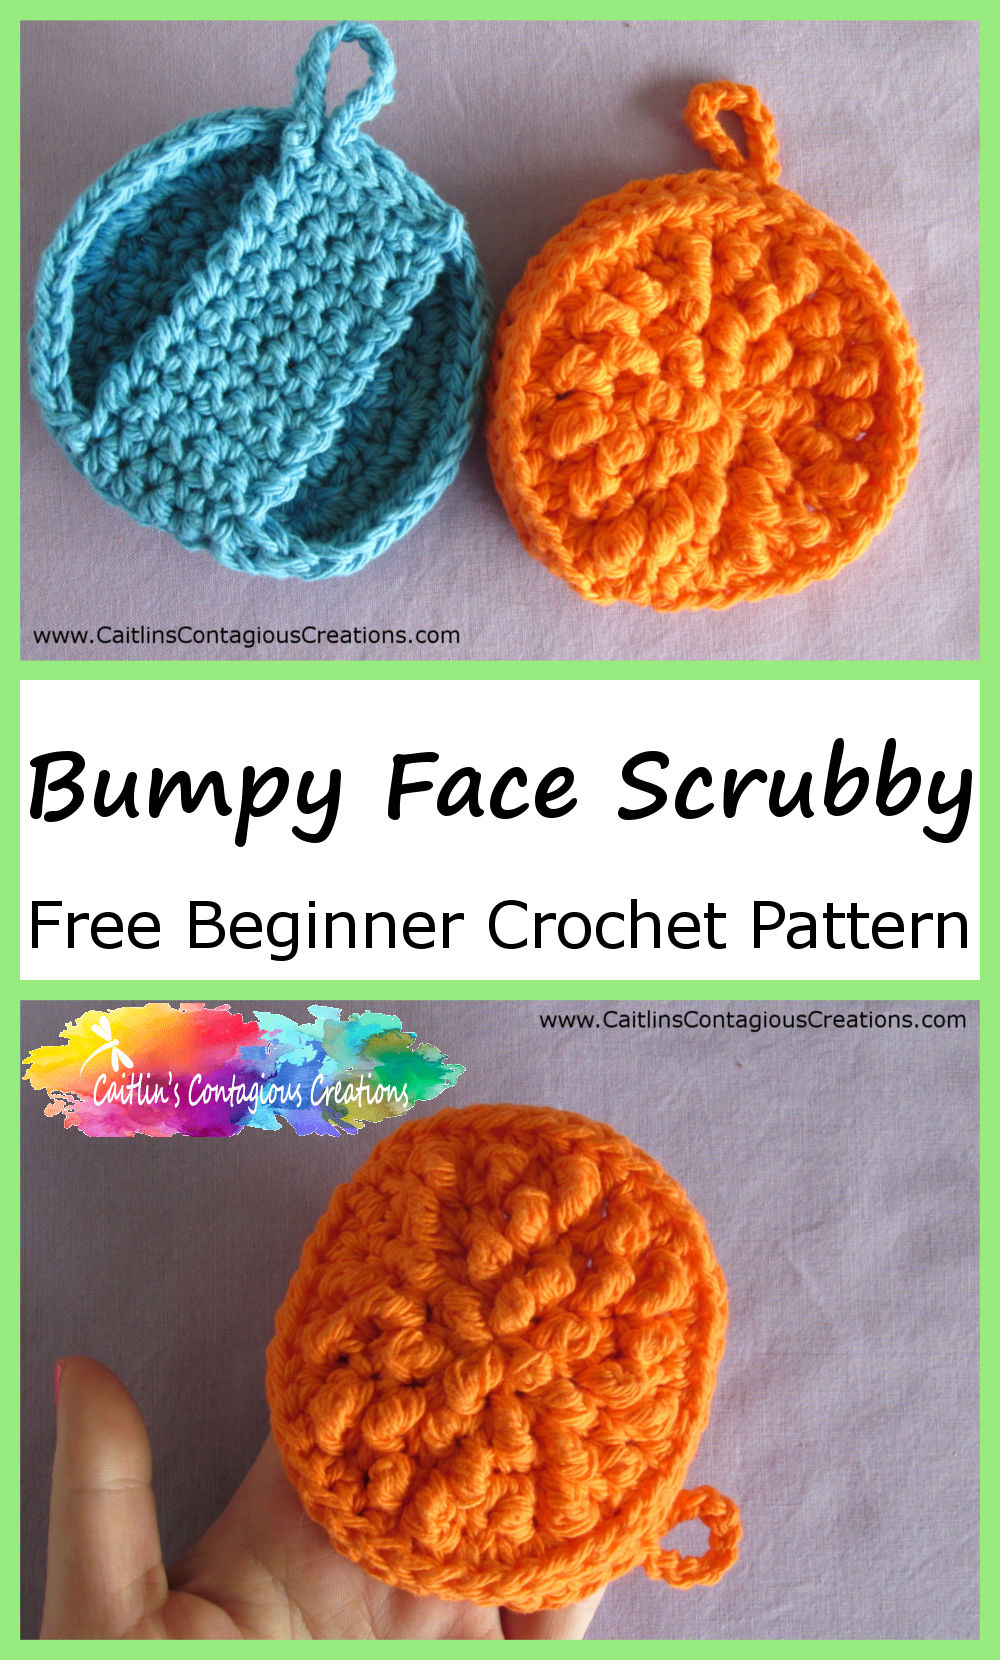 Bumpy Face Scrubby Free Beginner Crochet Pattern